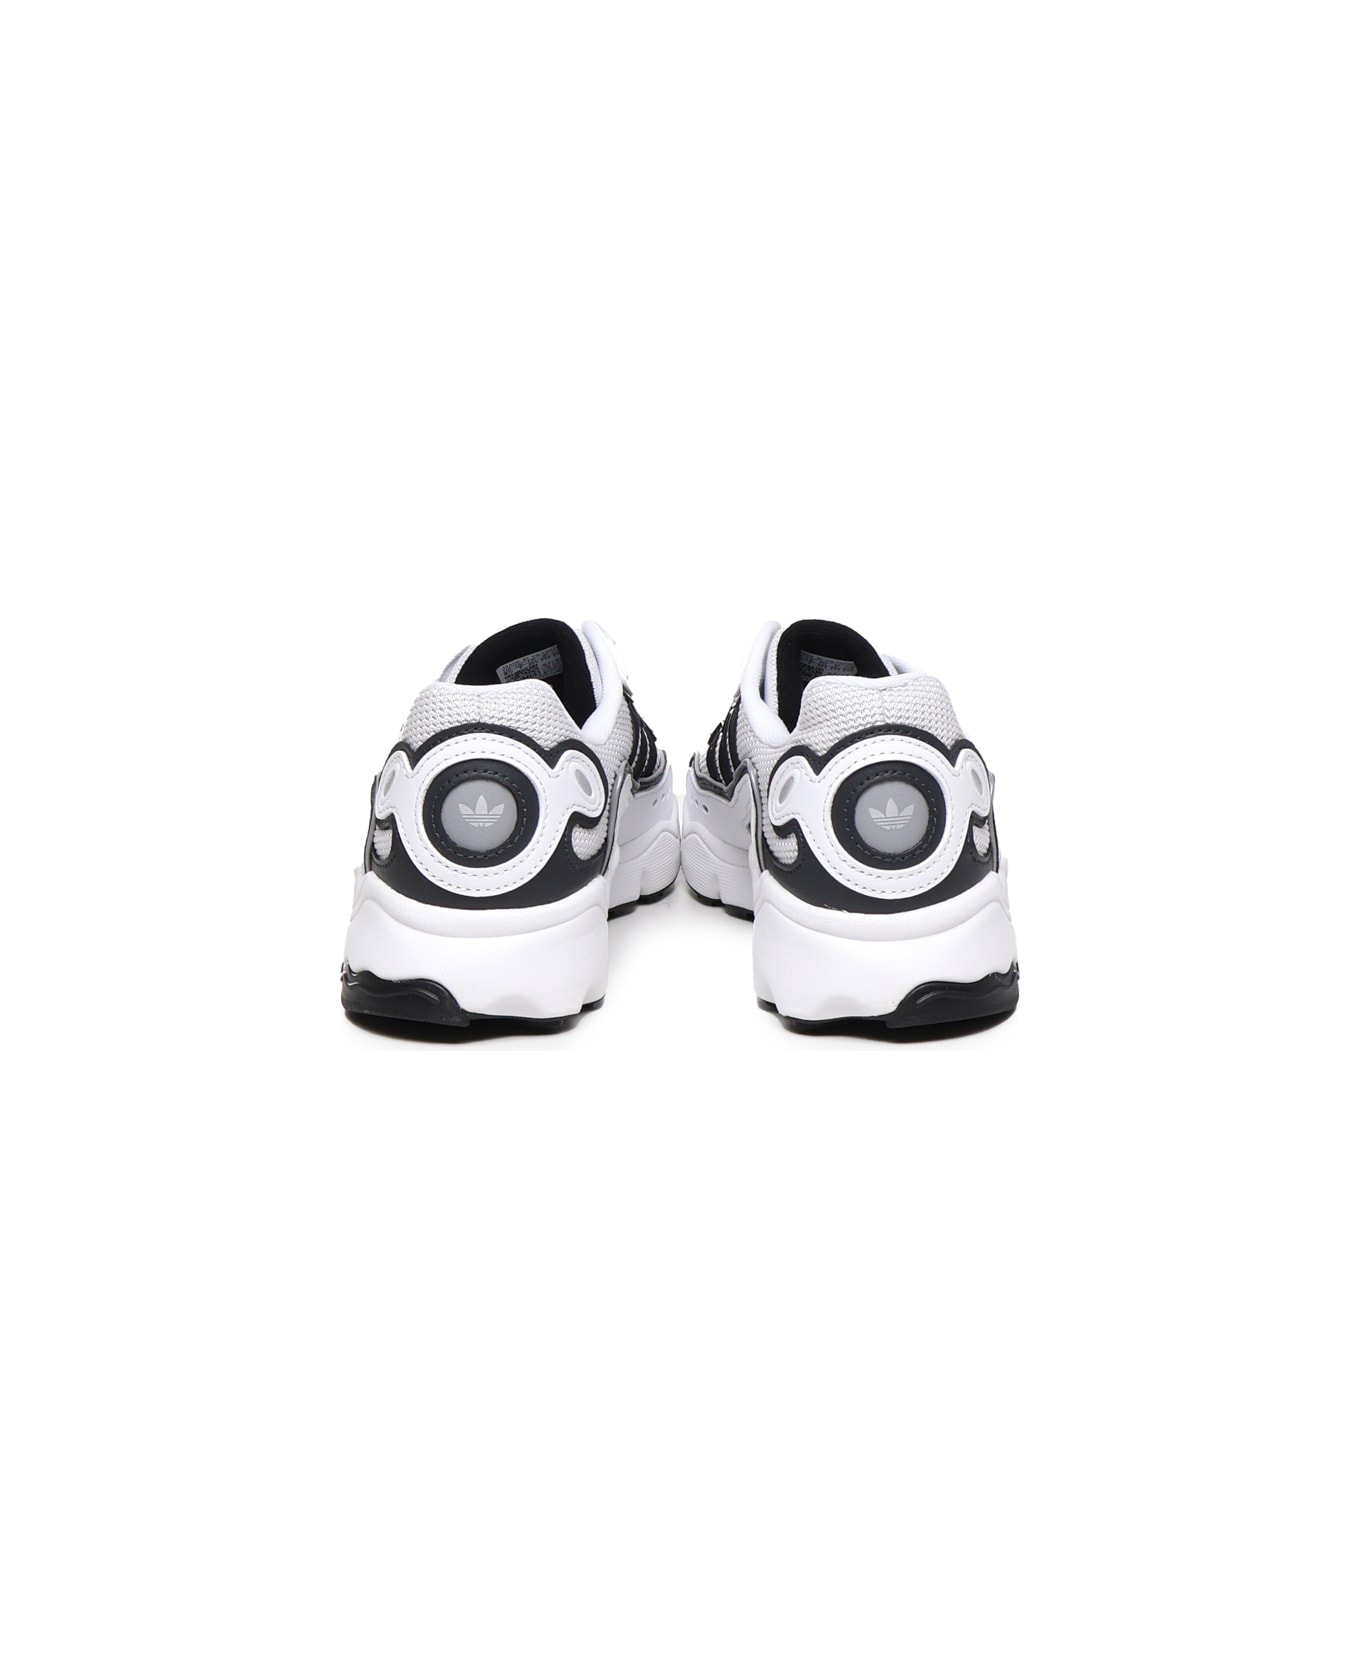 Adidas Originals Ozweego Og Shoes - White, black スニーカー